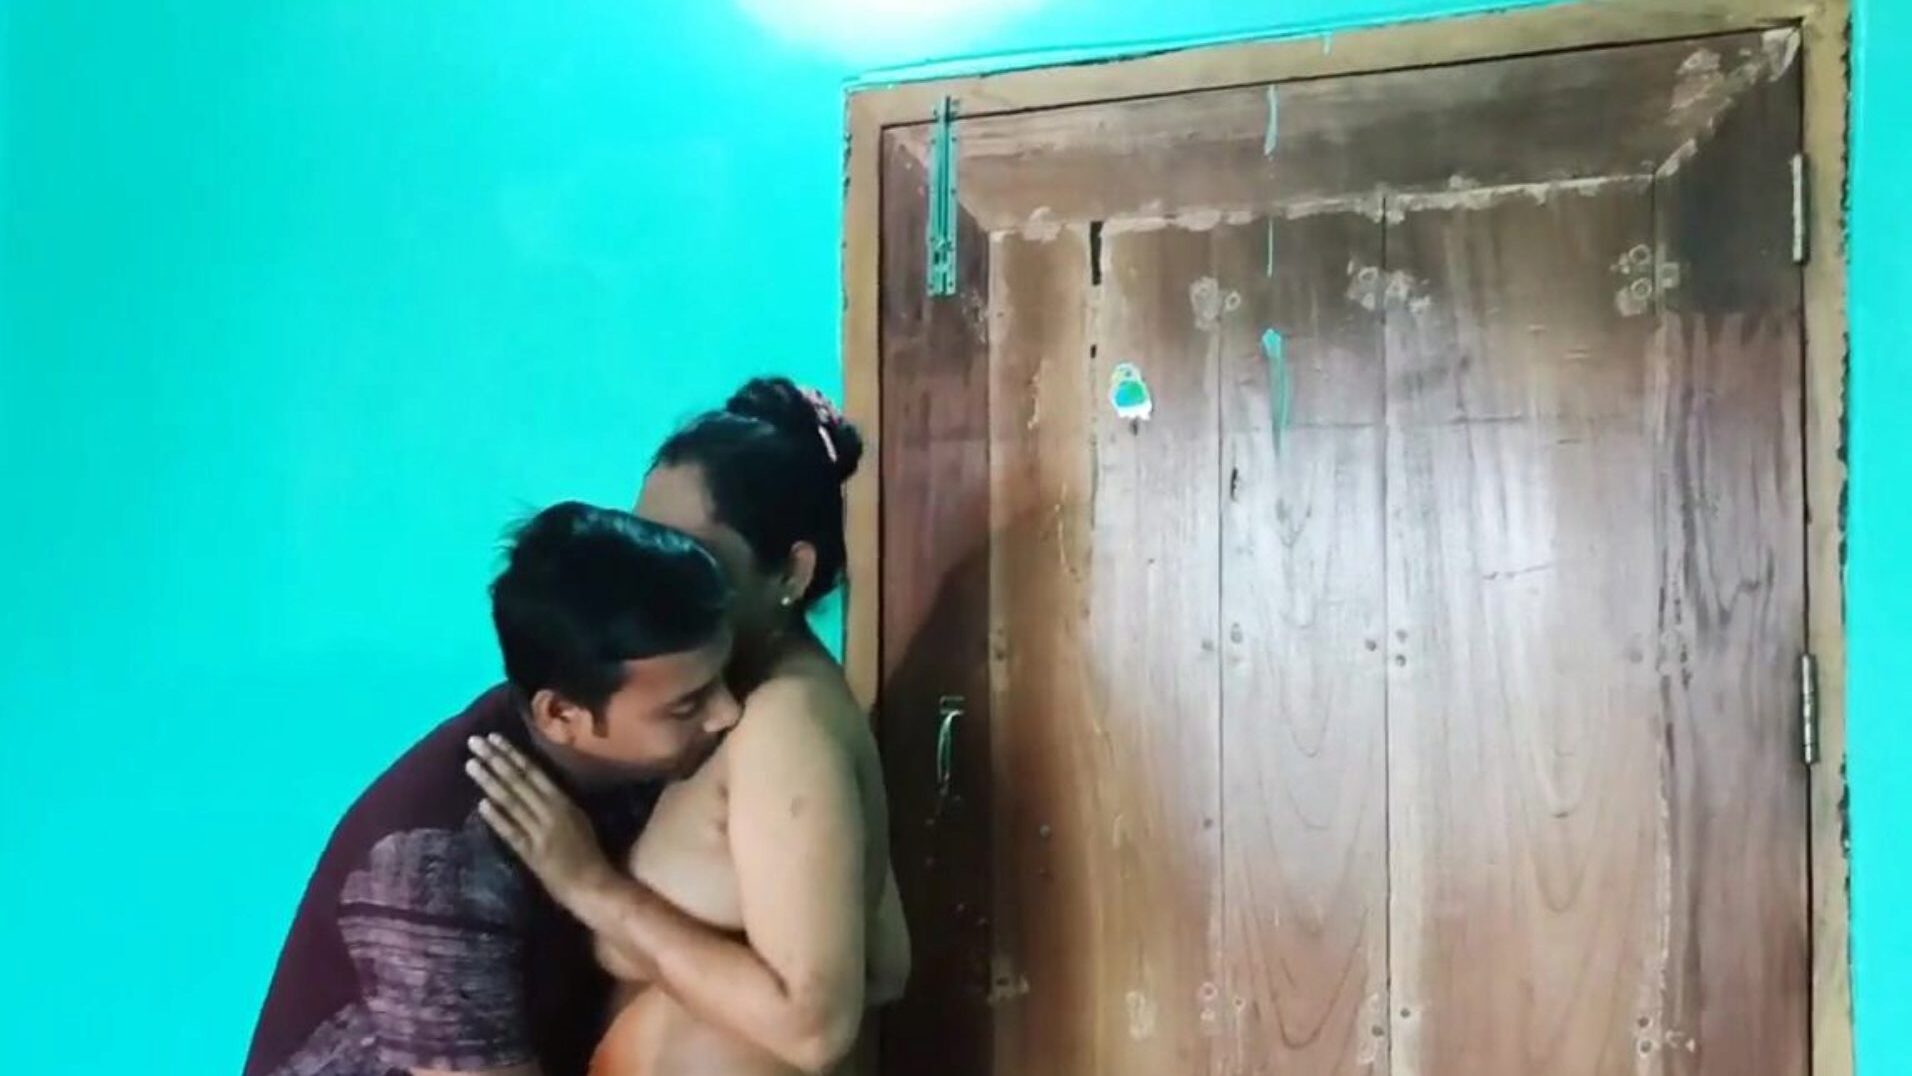 desi bengalsk sexvideo nøgen, gratis asiatisk porno 6c: xhamster se desi bengalsk sexvideo nøgen film på xhamster, den tykkeste hd-tilslutningsrørs webside med masser af gratis-for-alle asiatiske xxn sex og anal pornofilm